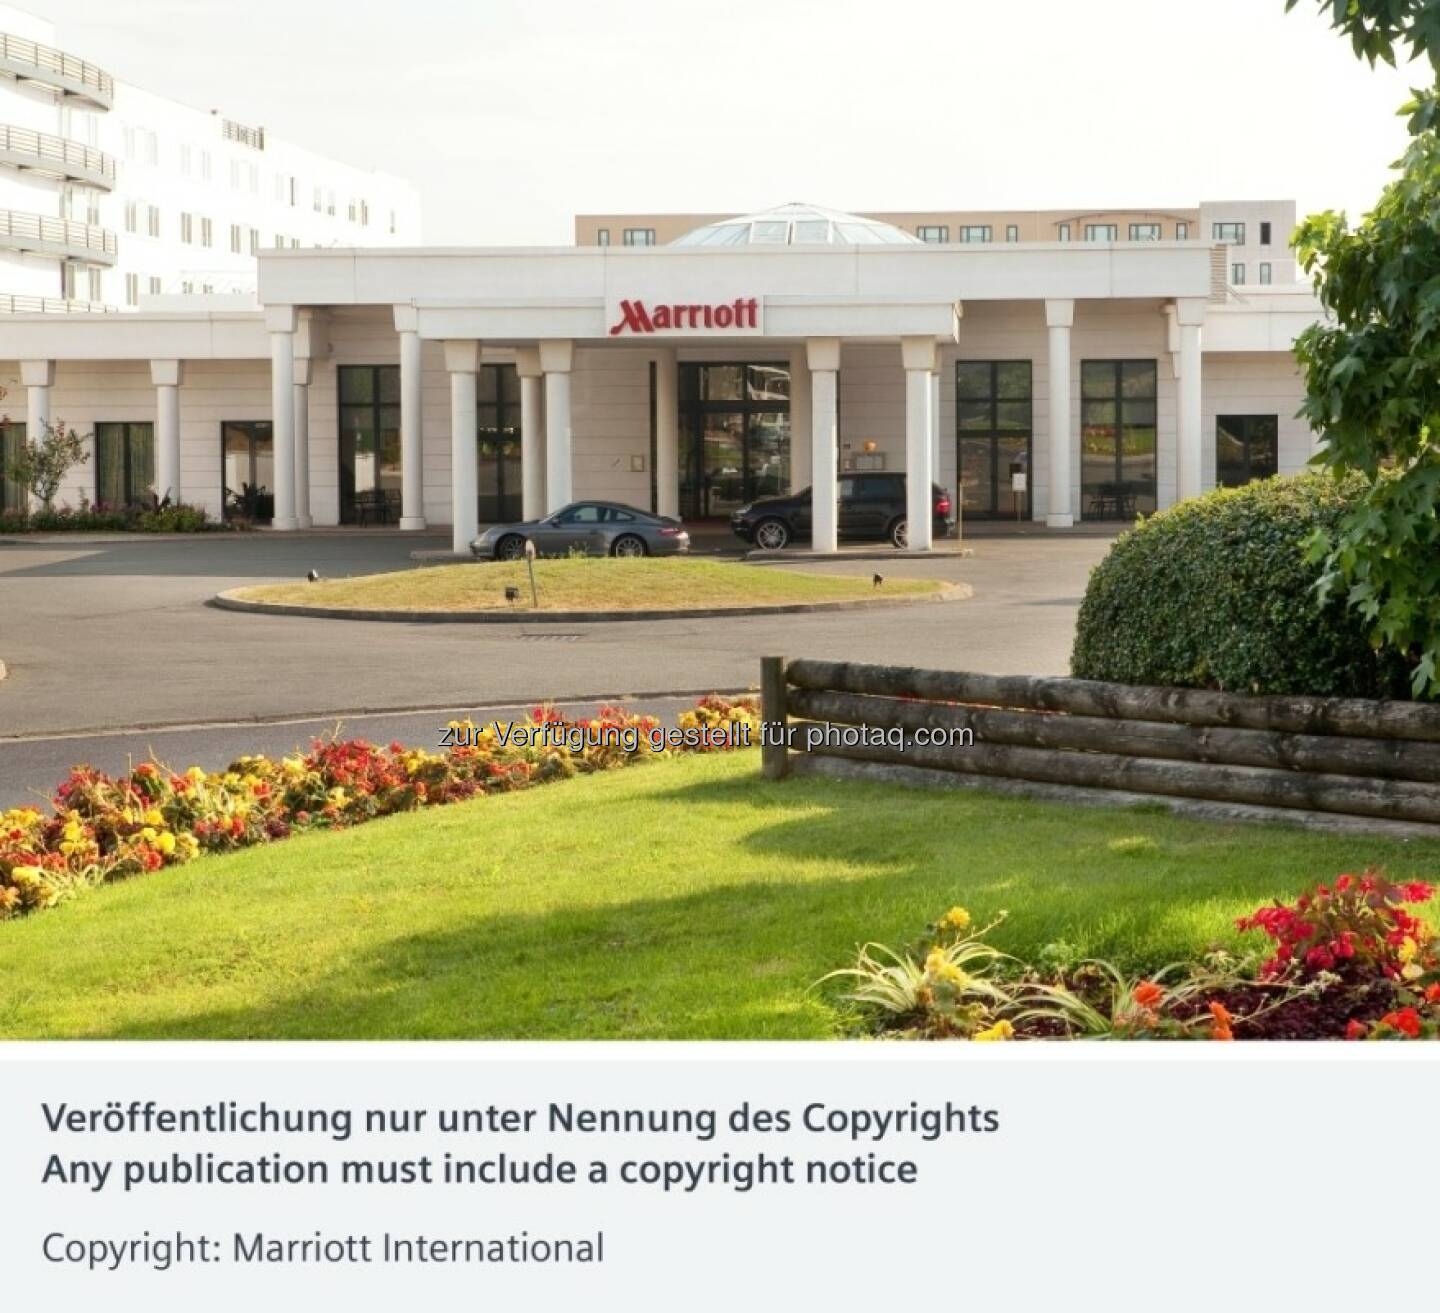 Siemens führt bei der Marriott-Hotelkette in Europa ein Energieeffizienzprogramm durch (c) Marriott